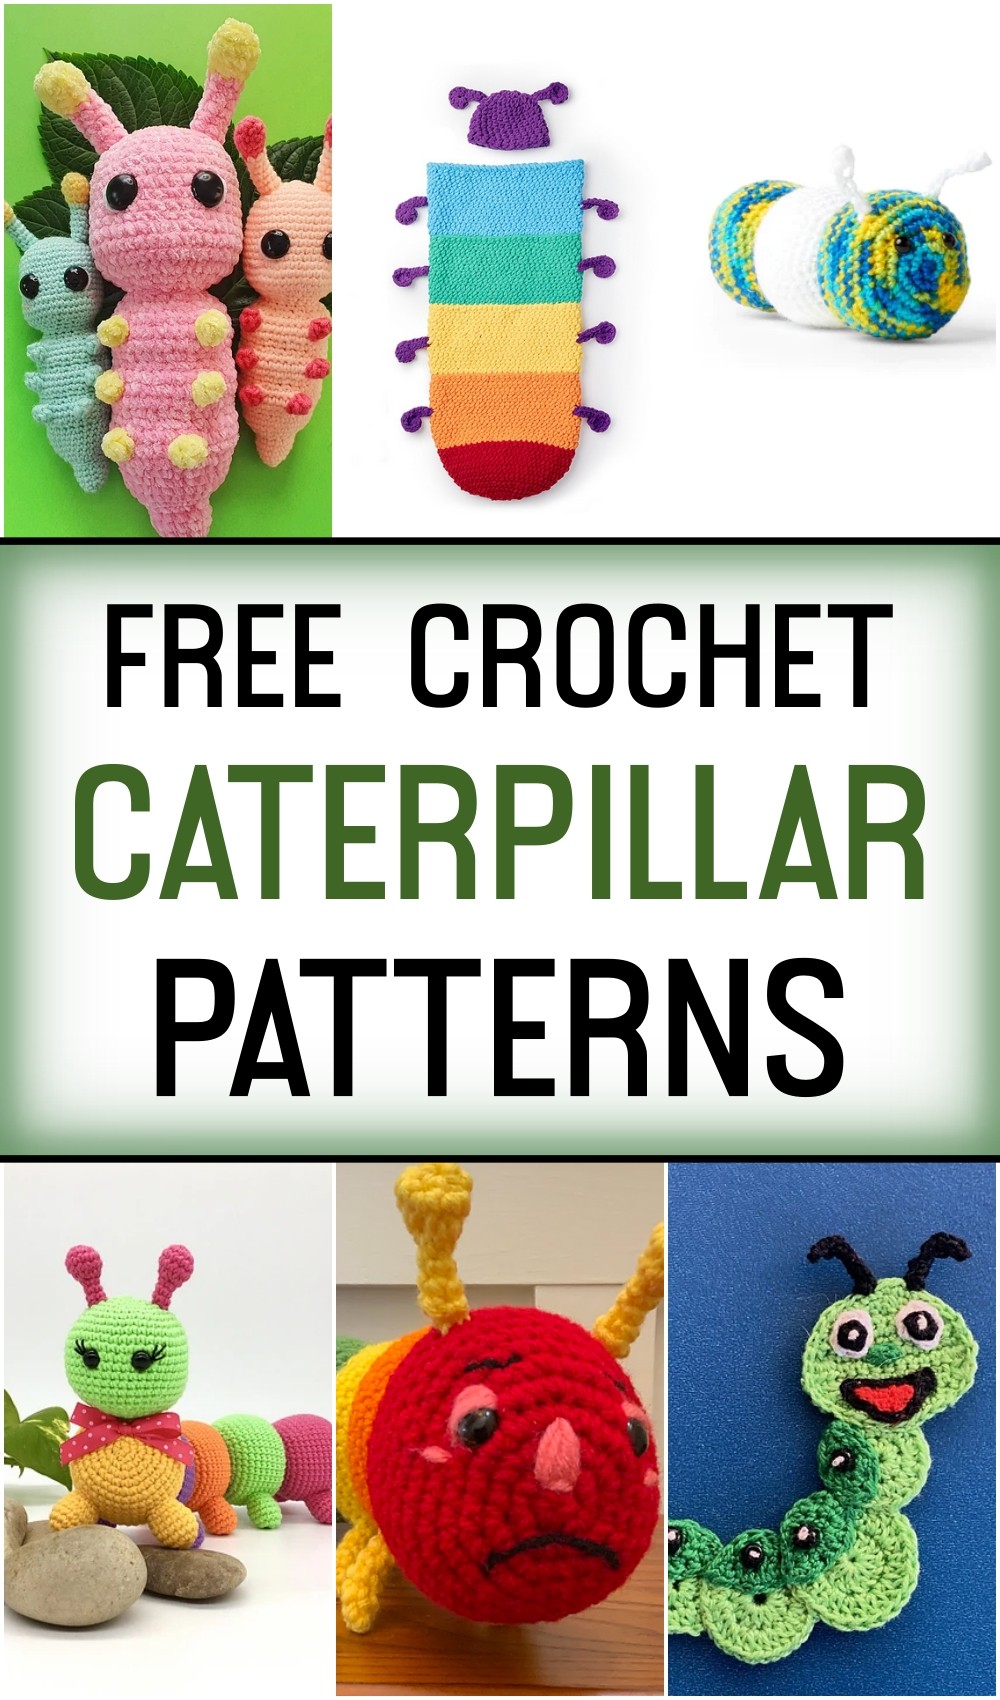 Free Crochet Caterpillar Patterns